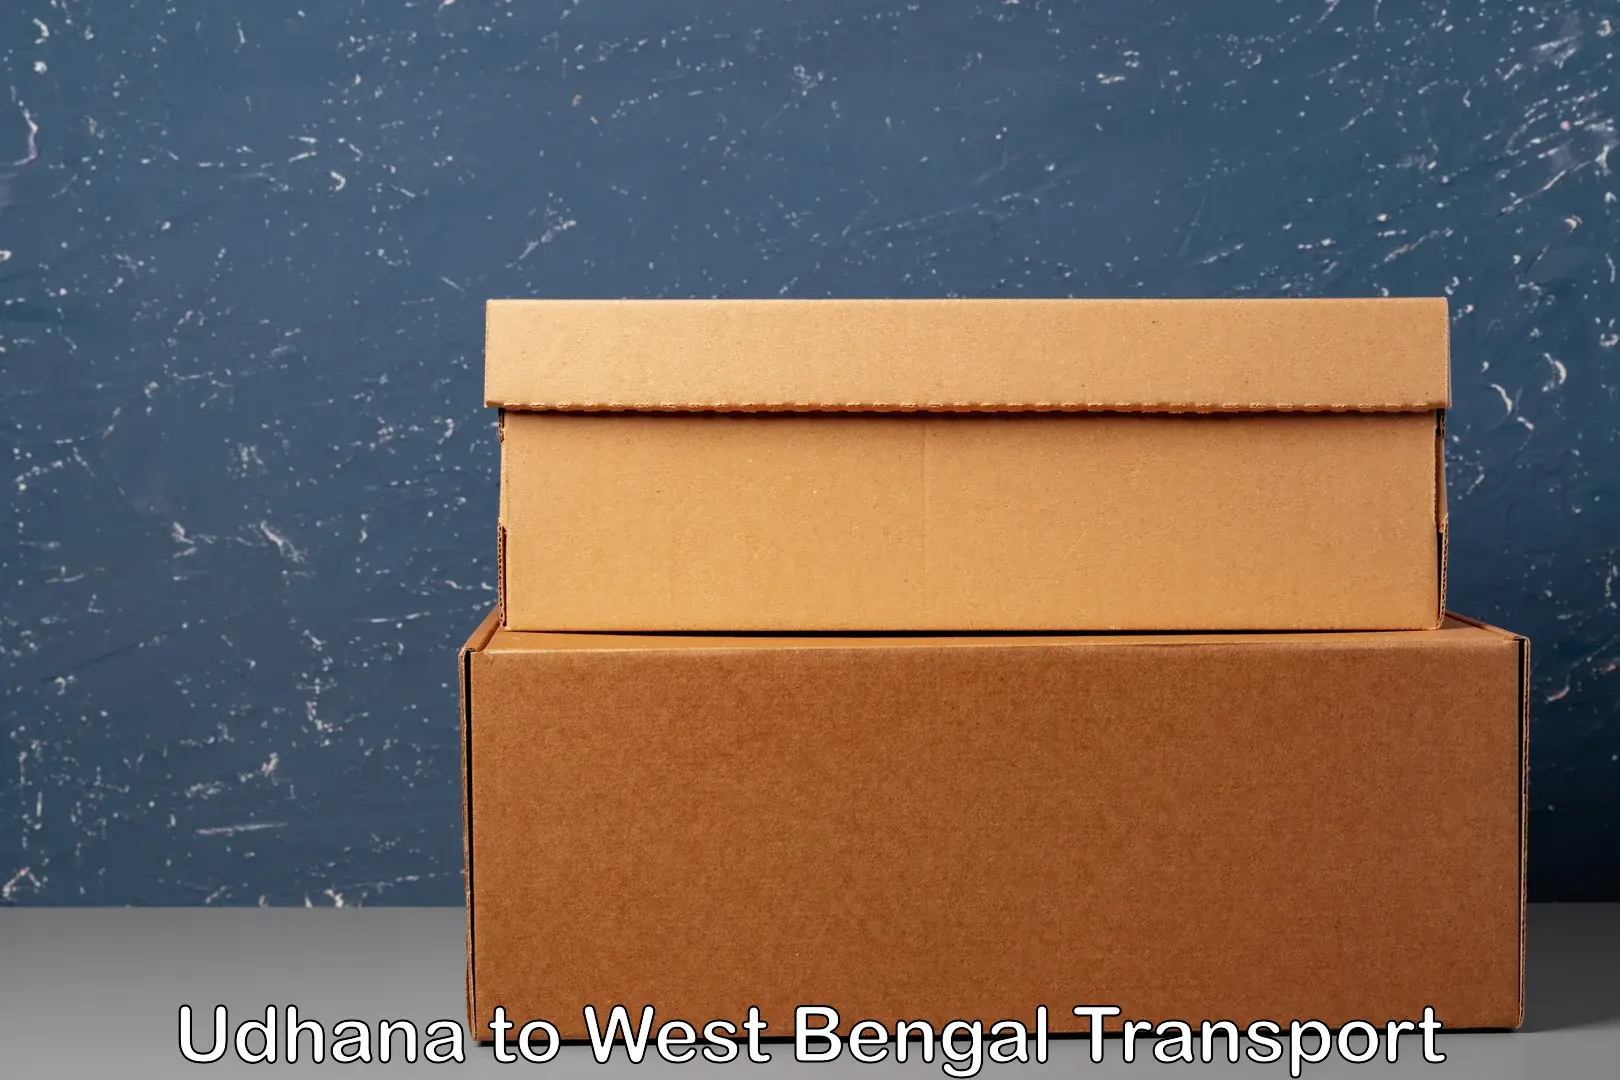 Commercial transport service Udhana to Morgram